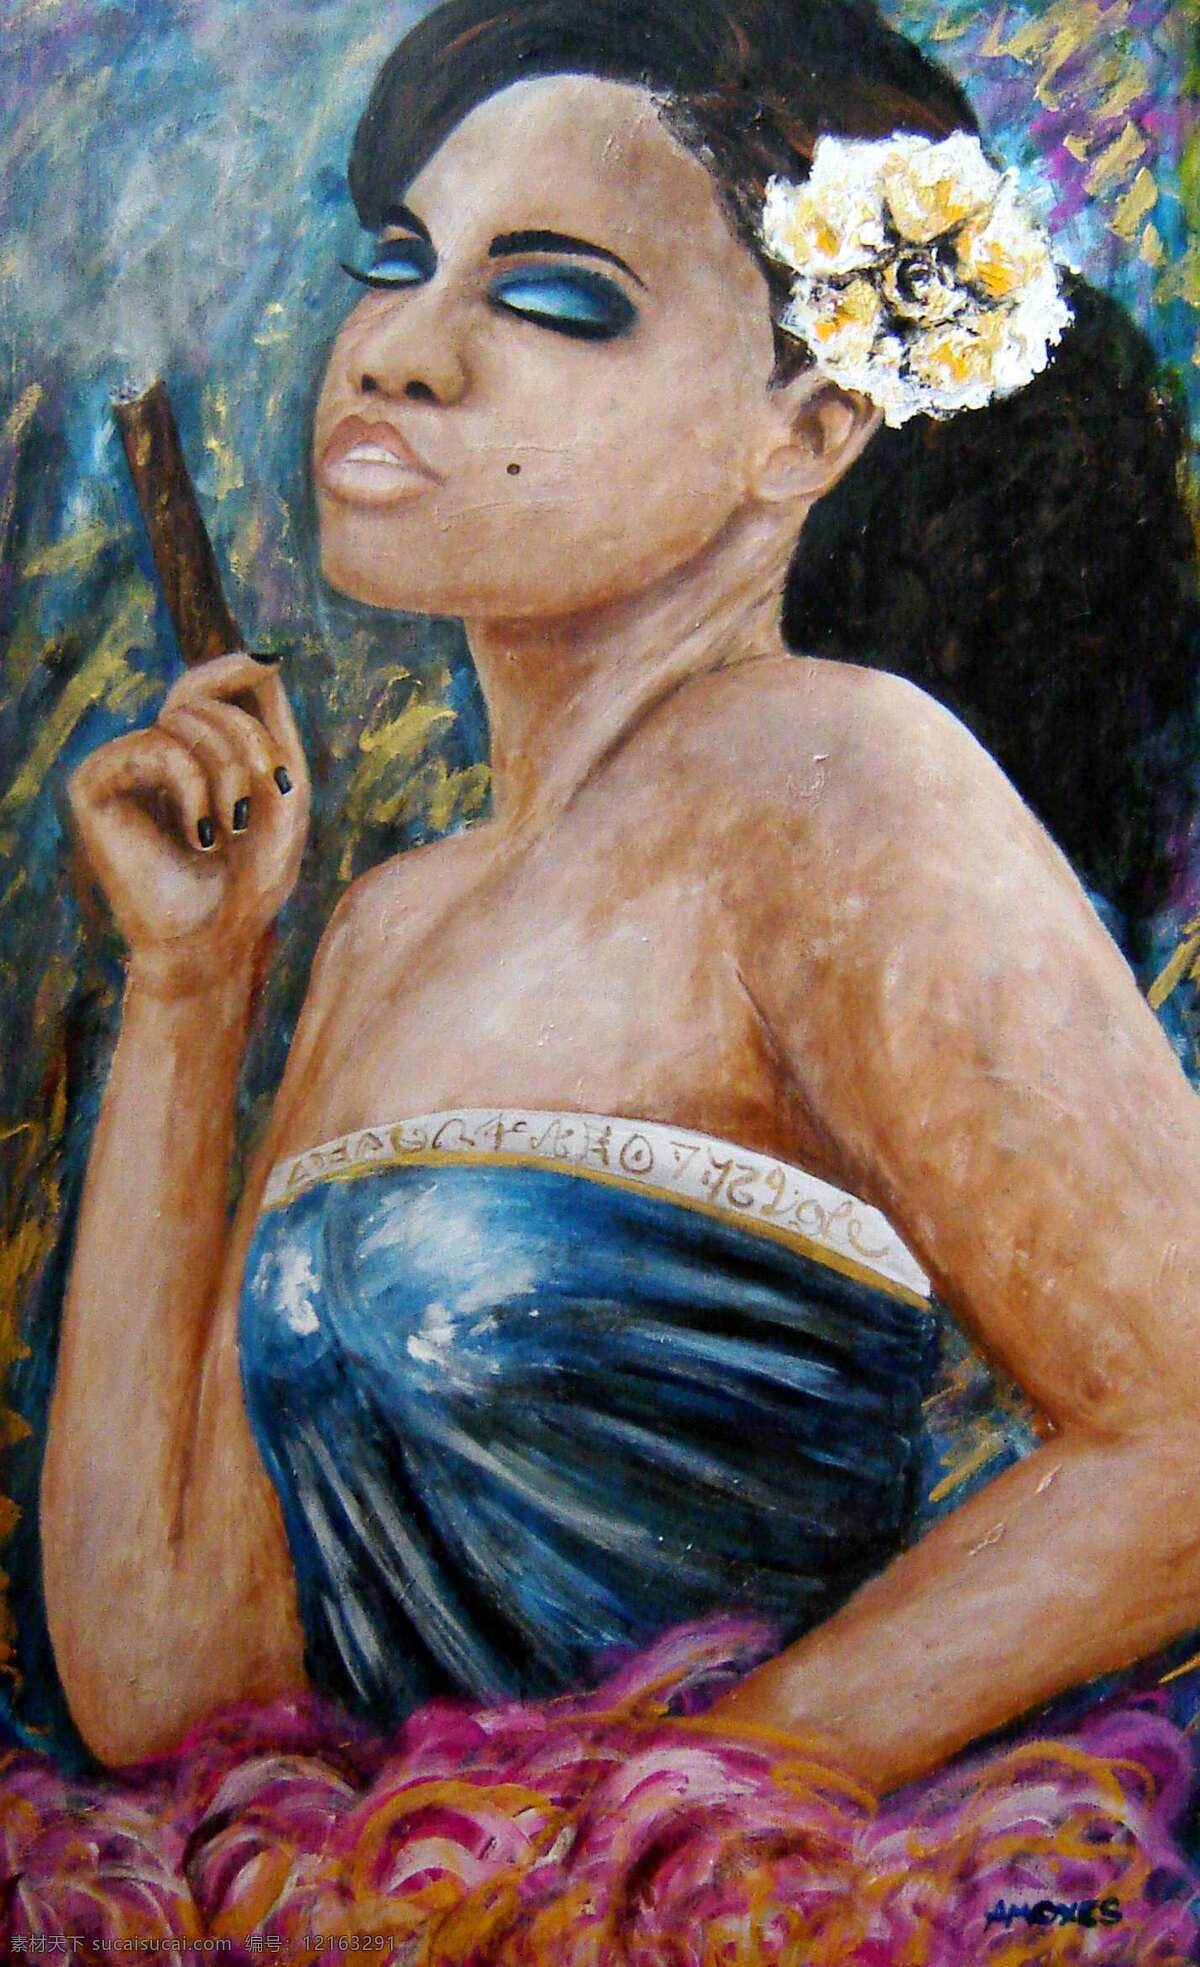 抽雪茄的女人 油画 人物画 当代油画 美术 外国人 现代绘画 抽雪茄 绘画书法 文化艺术